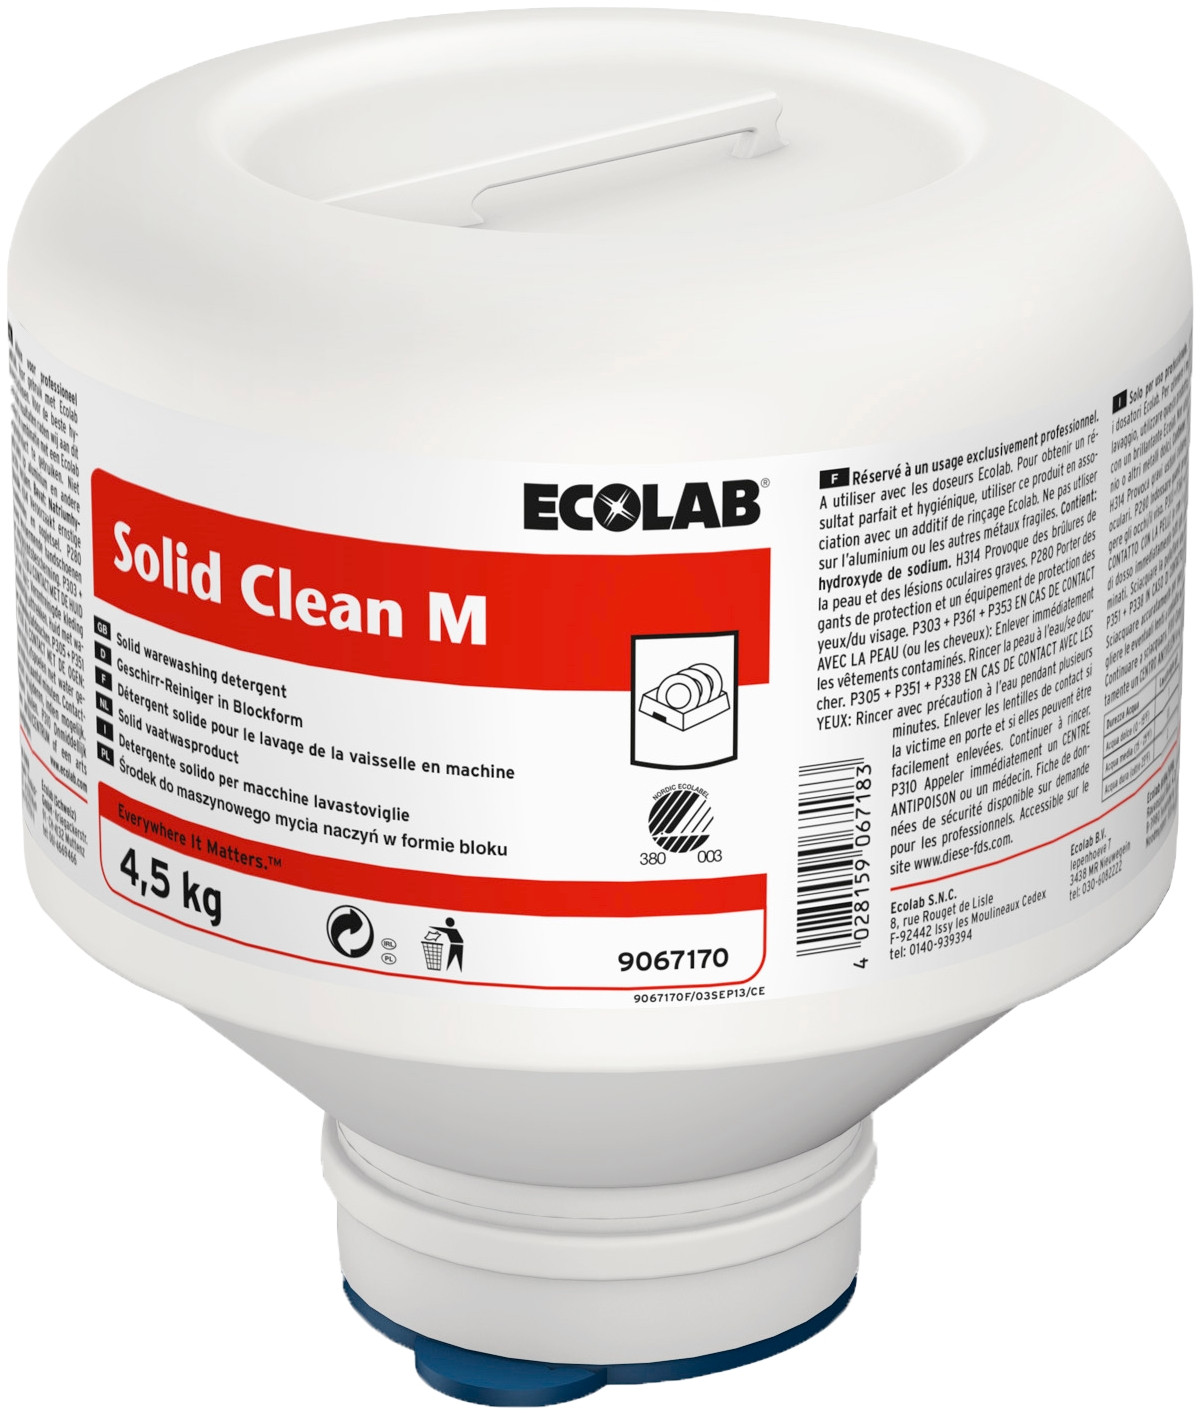 Ecolab Solid Clean M Maskinopvask 4x4,5 kg Uden klor (9067190)